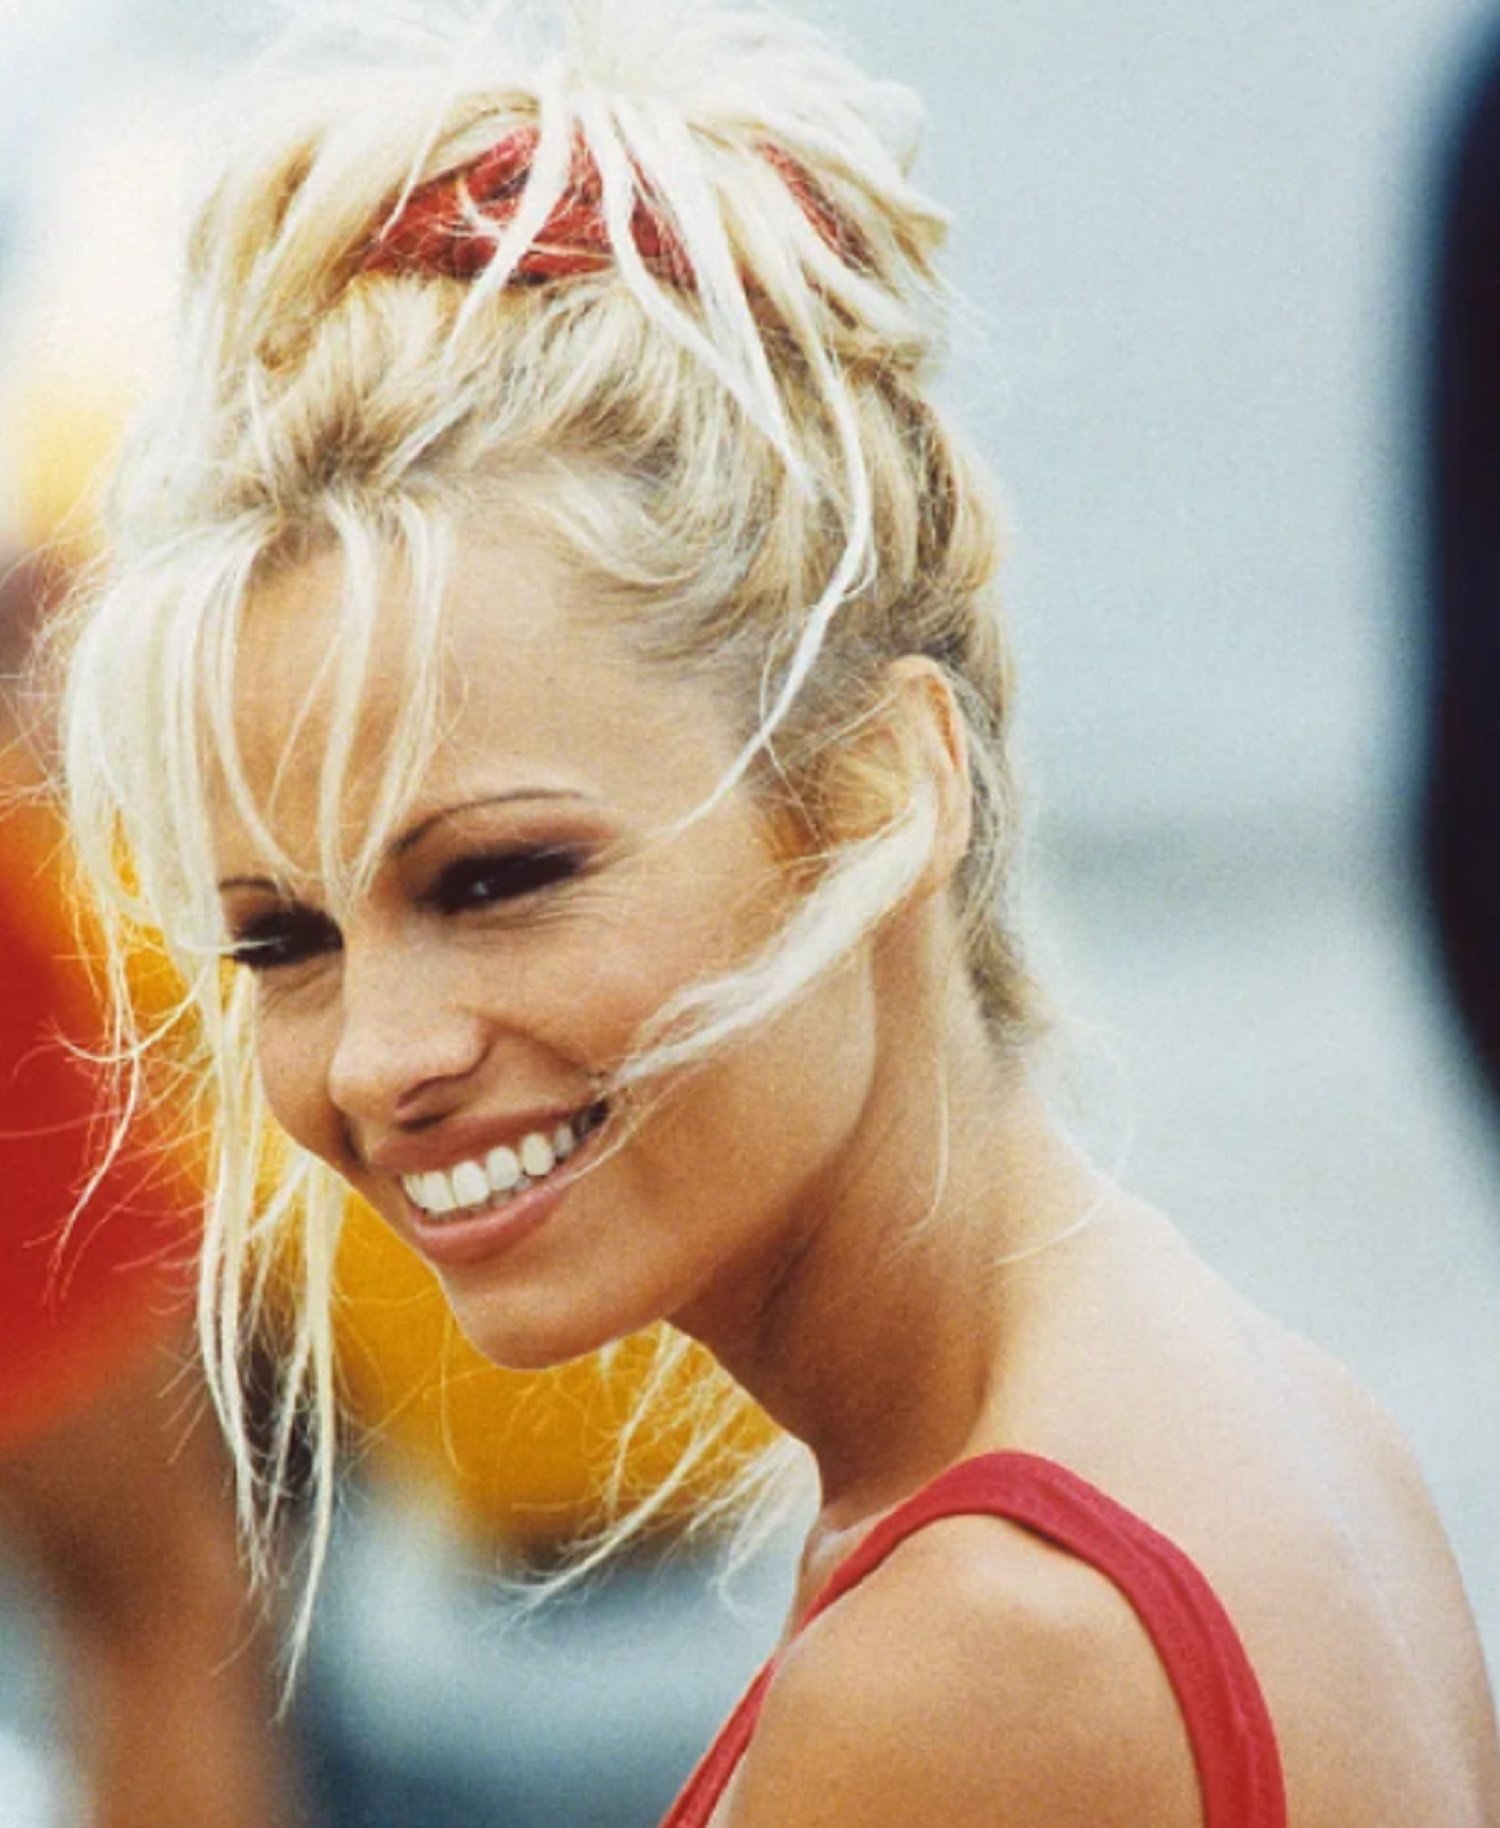 Pamela Anderson ja no és així, reapareix irreconeixible, al natural: no sembla ella